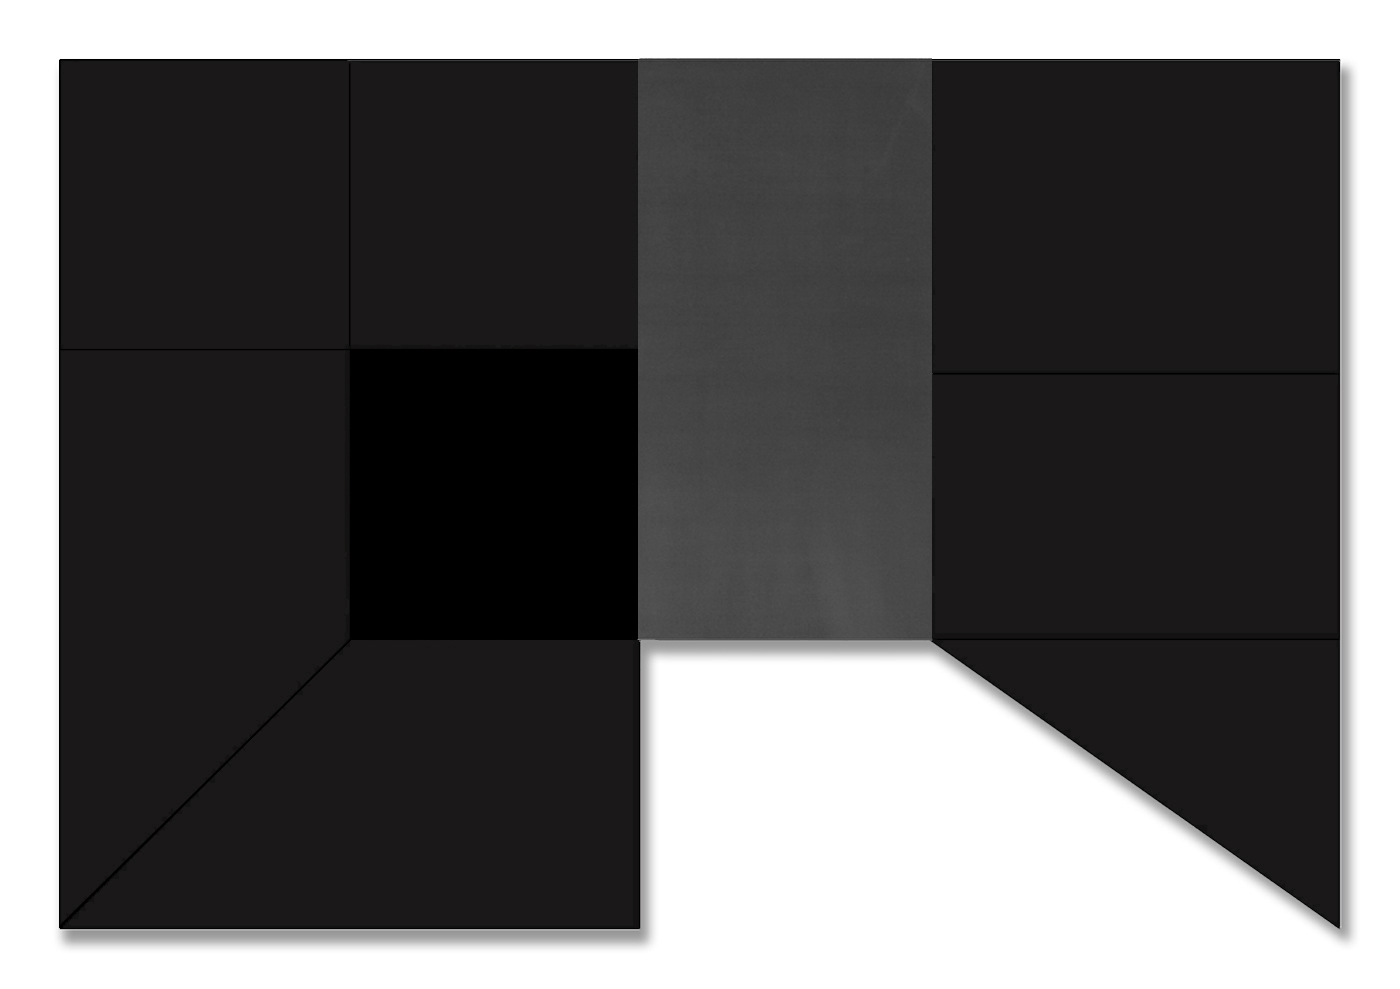  Black Room I, 2016  NANO, Digital Print on Diasec and Lead on Aluminum  139” x 94”    Cuarto Negro l, 2016  Nano, Impresión Digital Montada en Acrílico por Emulsión (Diasec) y Plomo  352 cm x 240 cm 